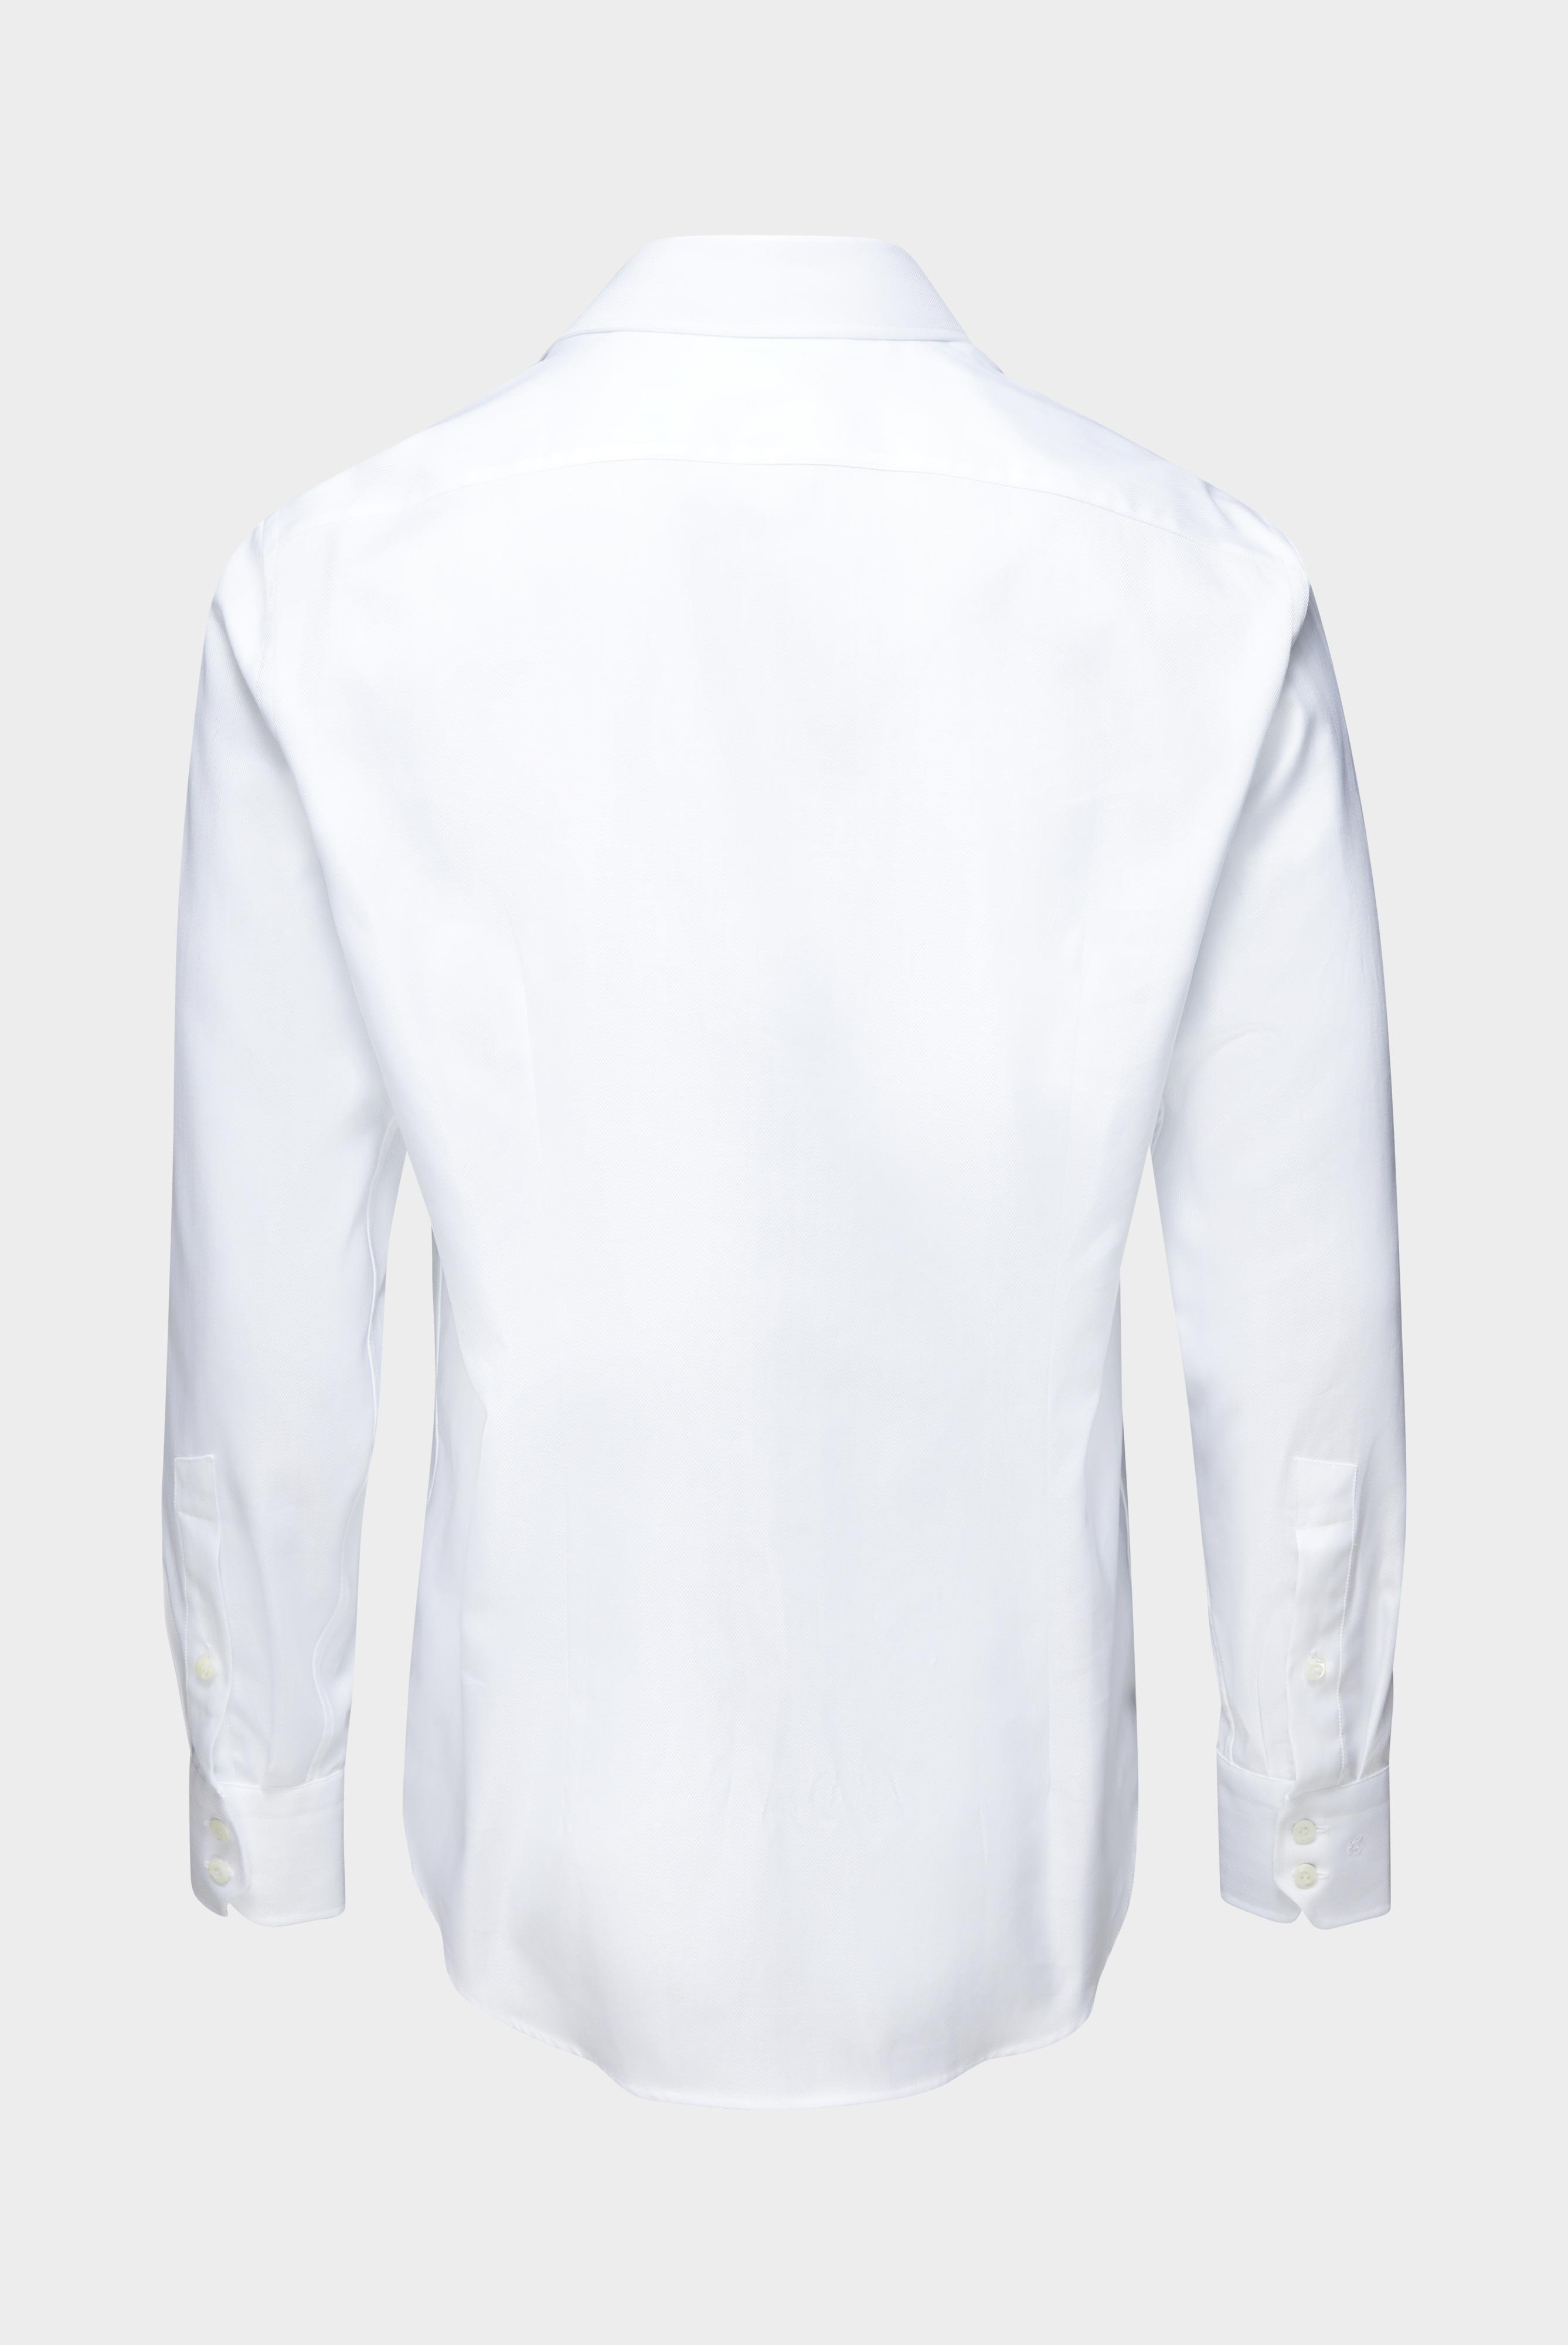 Business Hemden+Twill Hemd mit Fischgrat Tailor Fit+20.2020.AV.102501.000.37